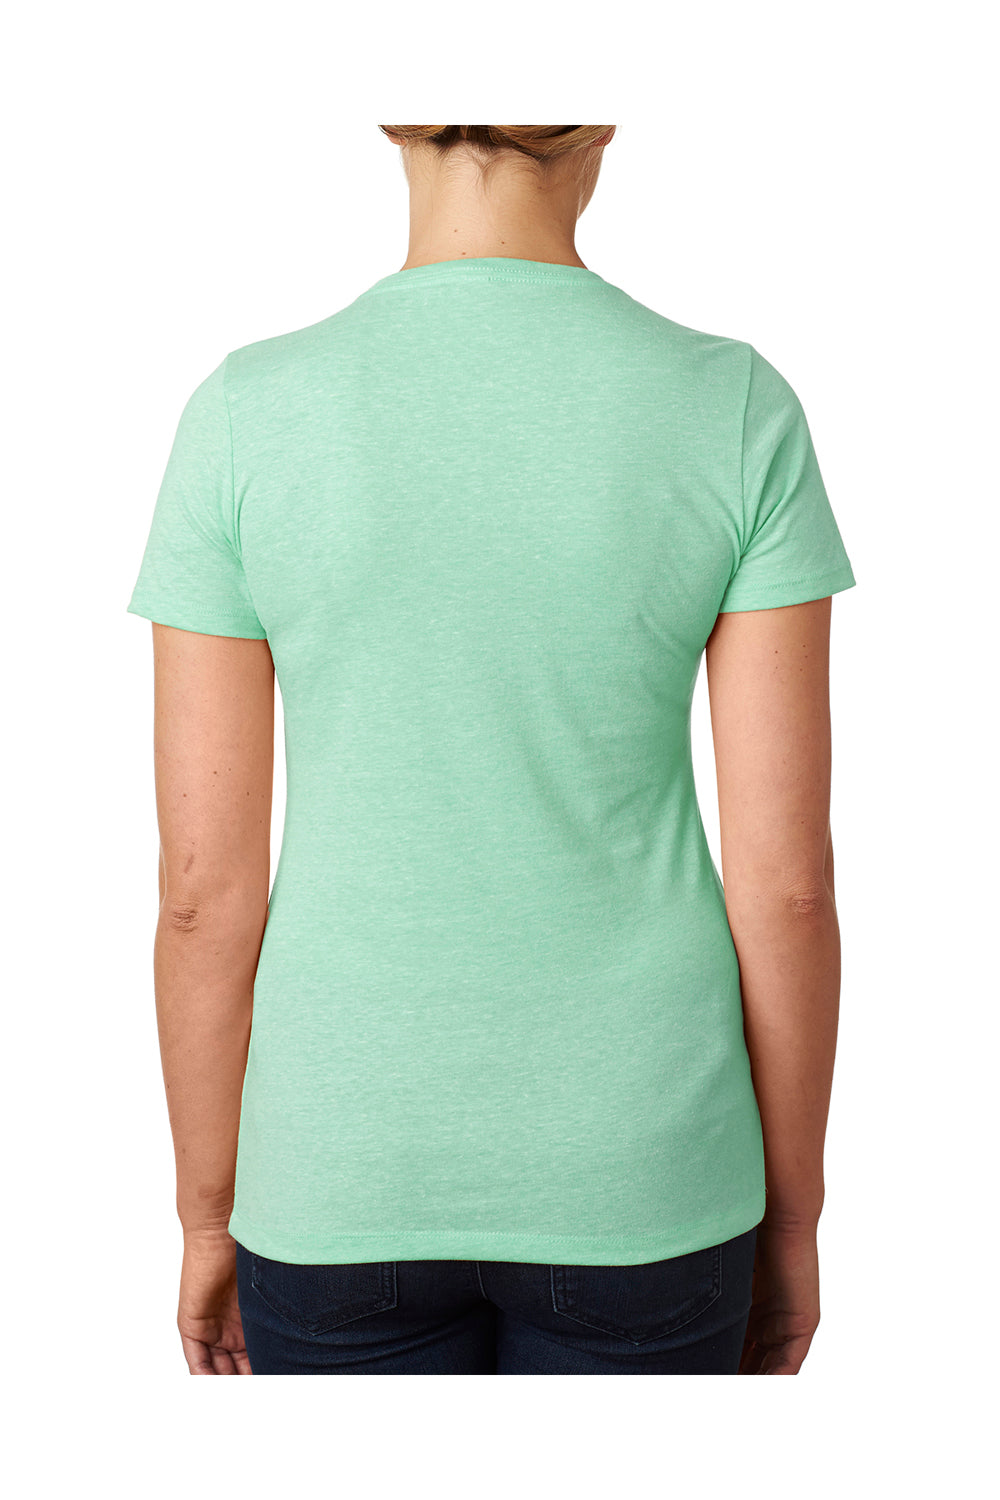 Next Level 6610 Womens CVC Jersey Short Sleeve Crewneck T-Shirt Mint Green Back